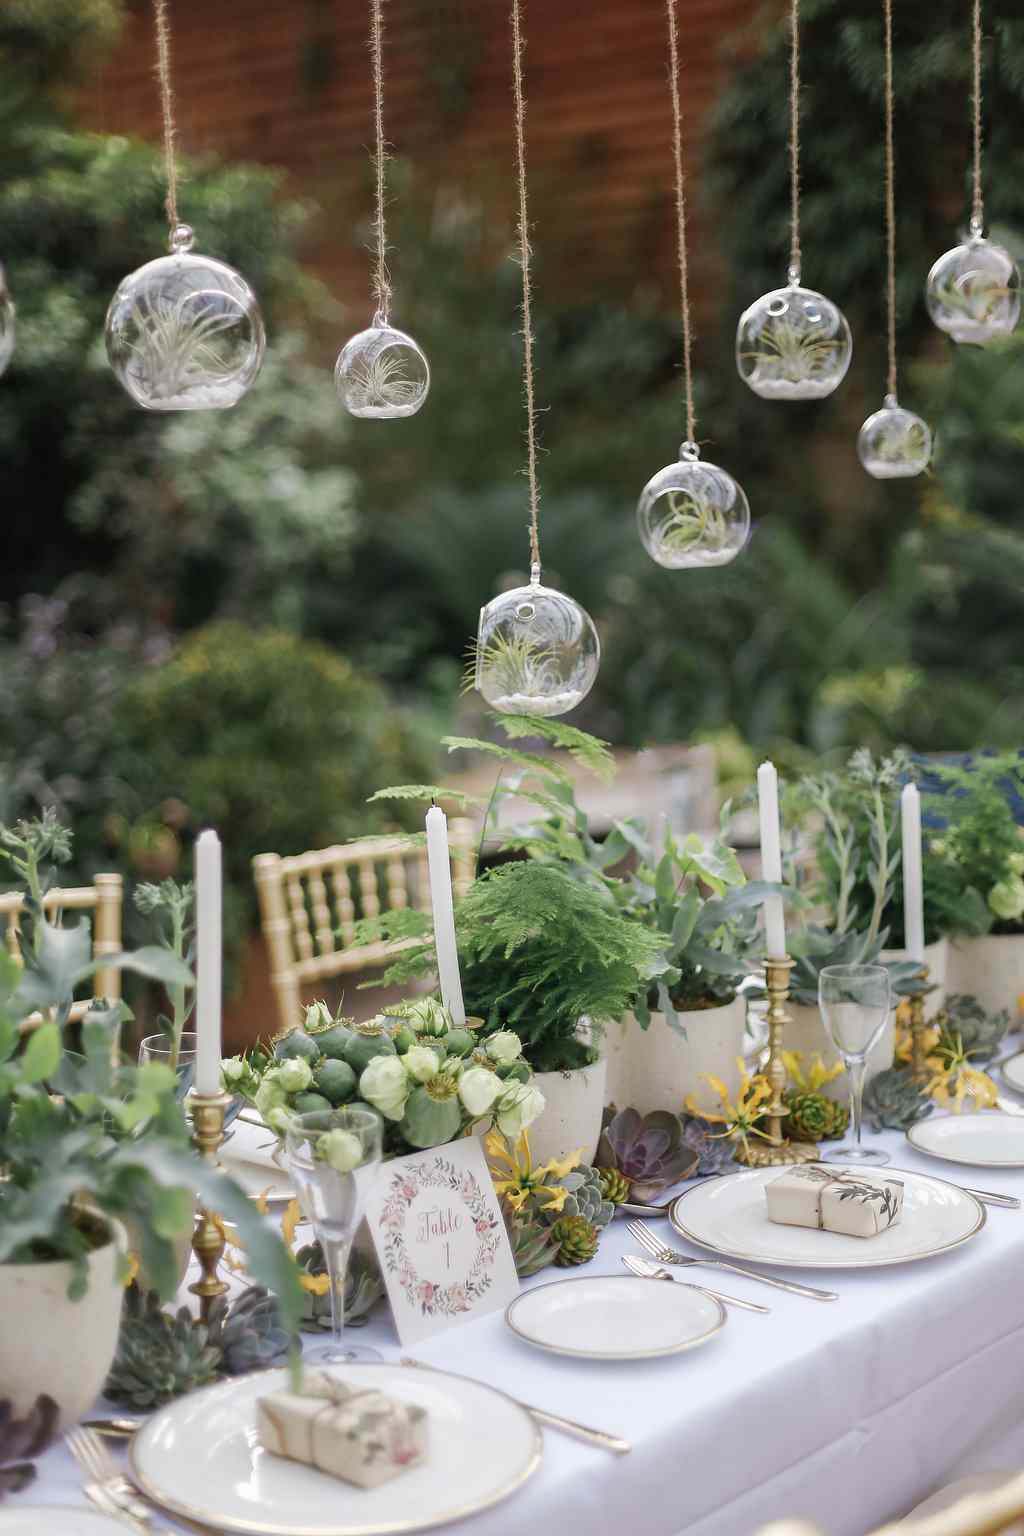 Greenery Hochzeit rustical in the garden plans Tischdeko Laub Trends